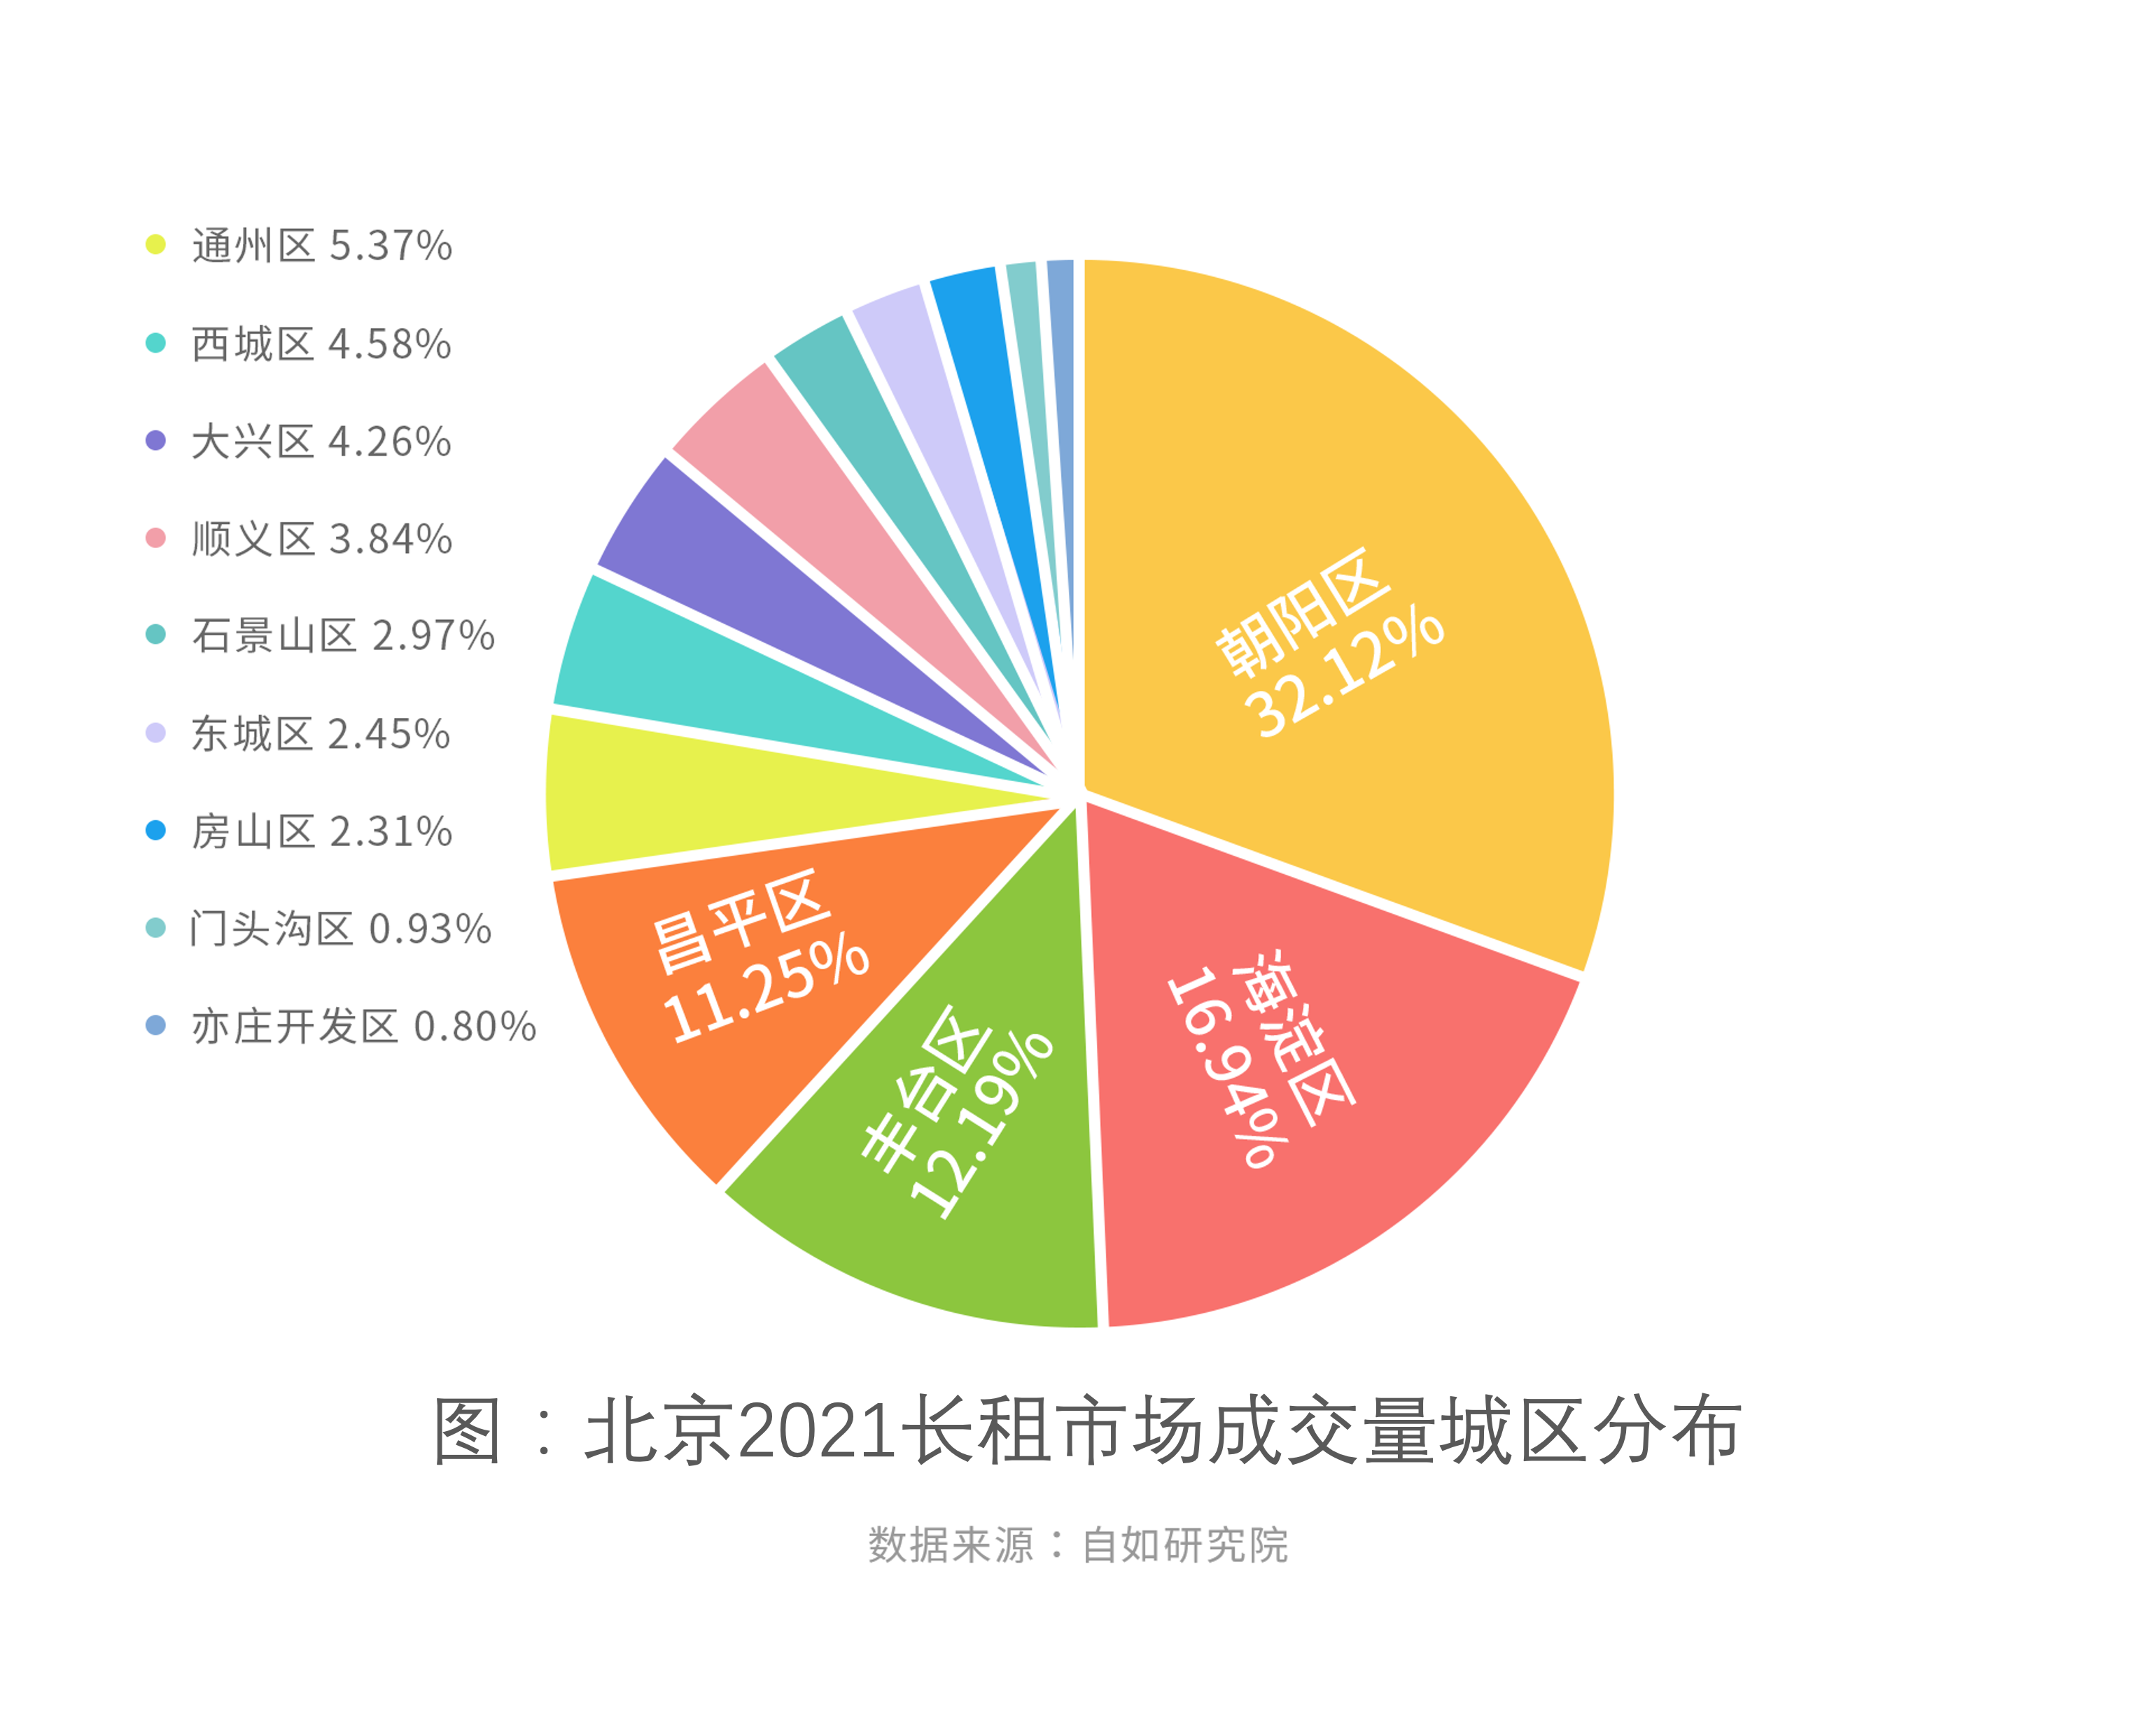 机构:北京30%的租房者在朝阳 长租机构月均租金波动不超过2%